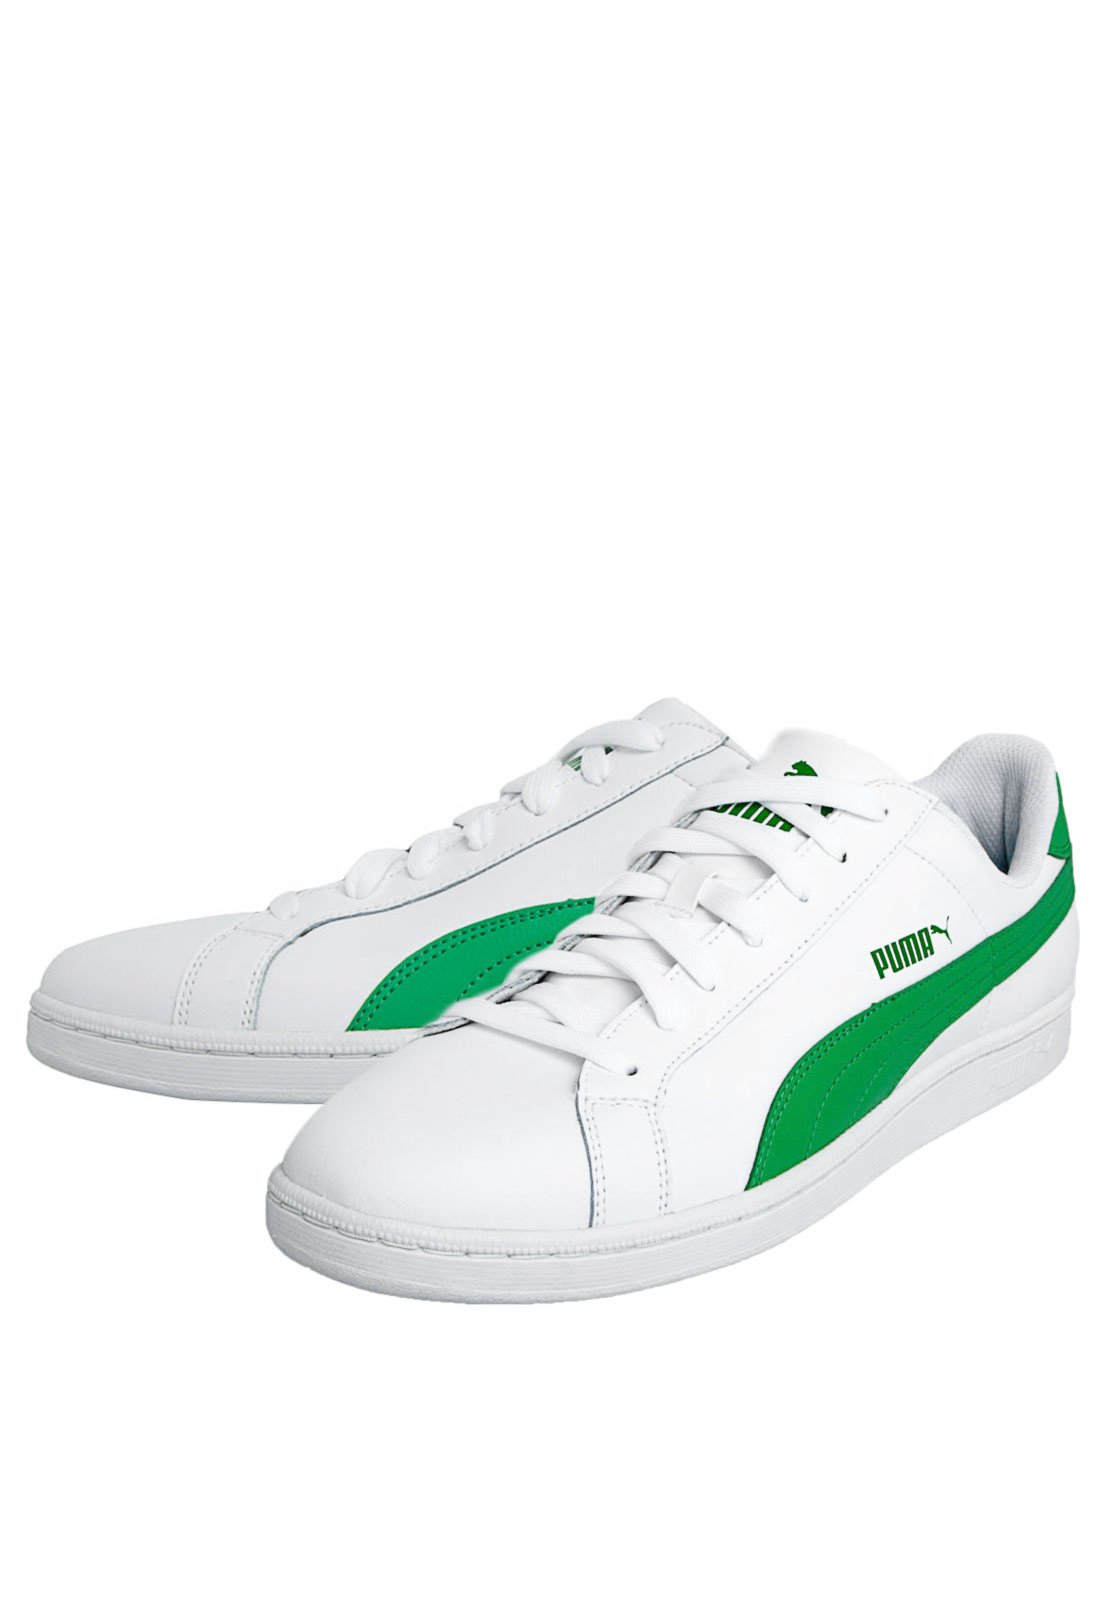 tenis puma verde e branco